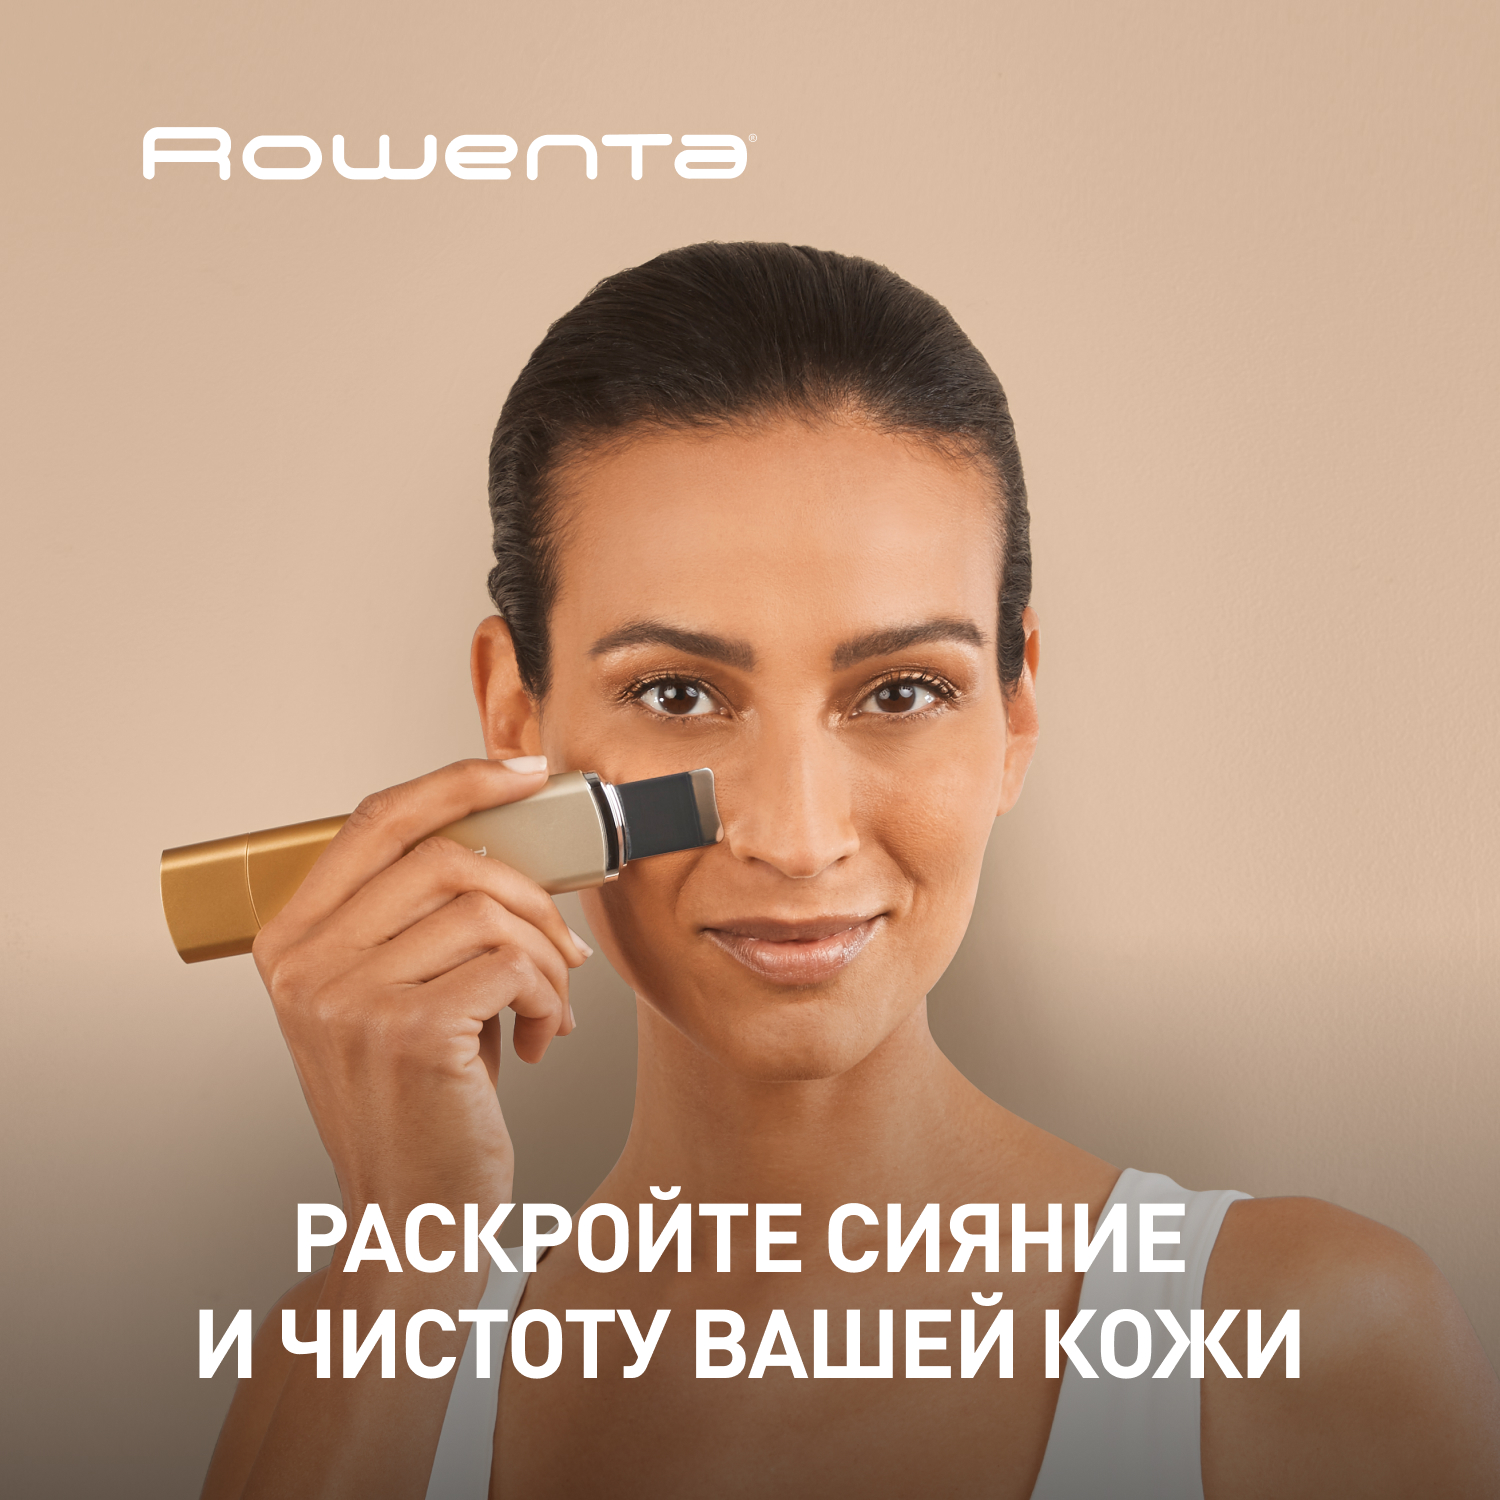 Ультразвуковой прибор для очистки лица Rowenta Skin-Sonic Purifier LV8030F0 история вашего будущего что технологии сделают с вашей работой и жизнью